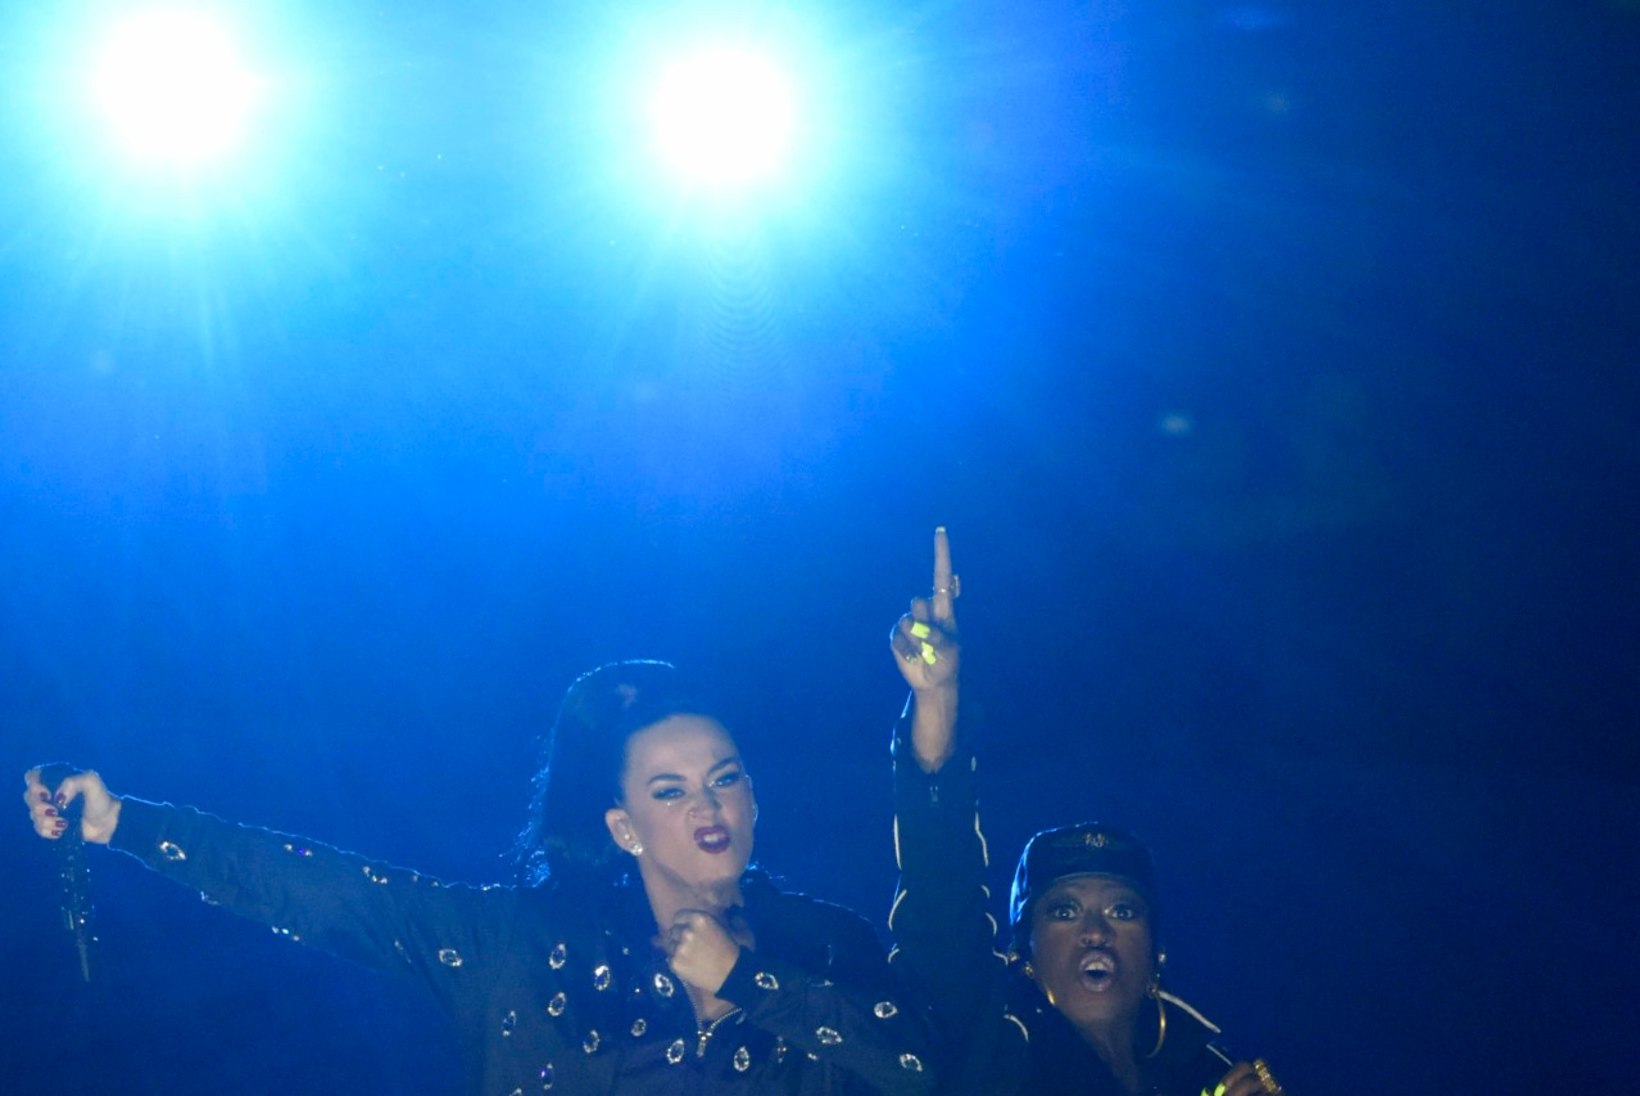 GALERII: Laulja Katy Perry kandis Super Bowli 10minutilise esinemise jooksul 4 erinevat kostüümi